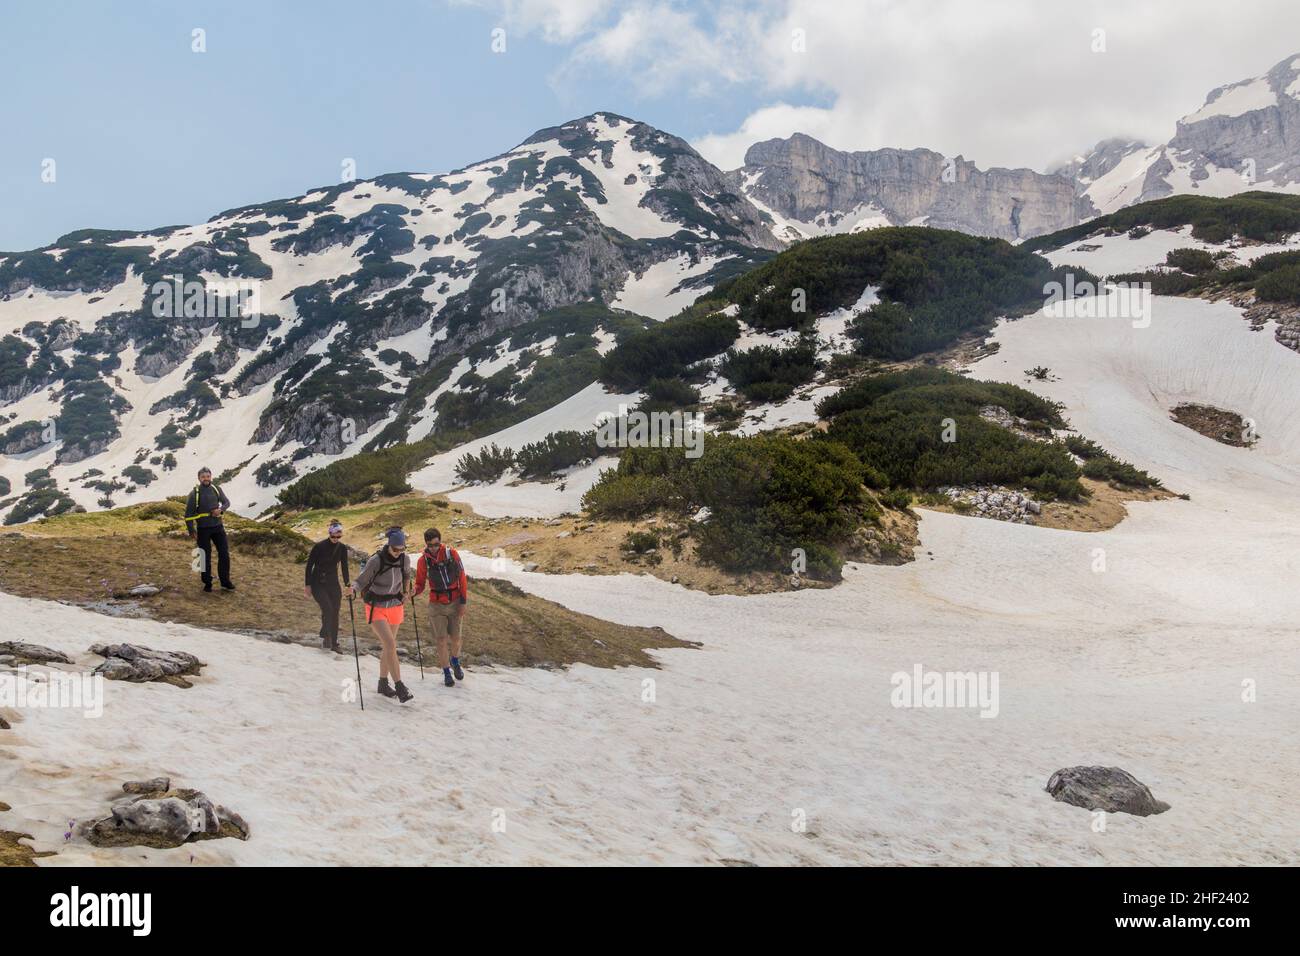 DURMITOR, MONTENEGRO - 6 DE JUNIO de 2019: Grupo de excursionistas en el parque nacional de Durmitor, Montenegro. Foto de stock